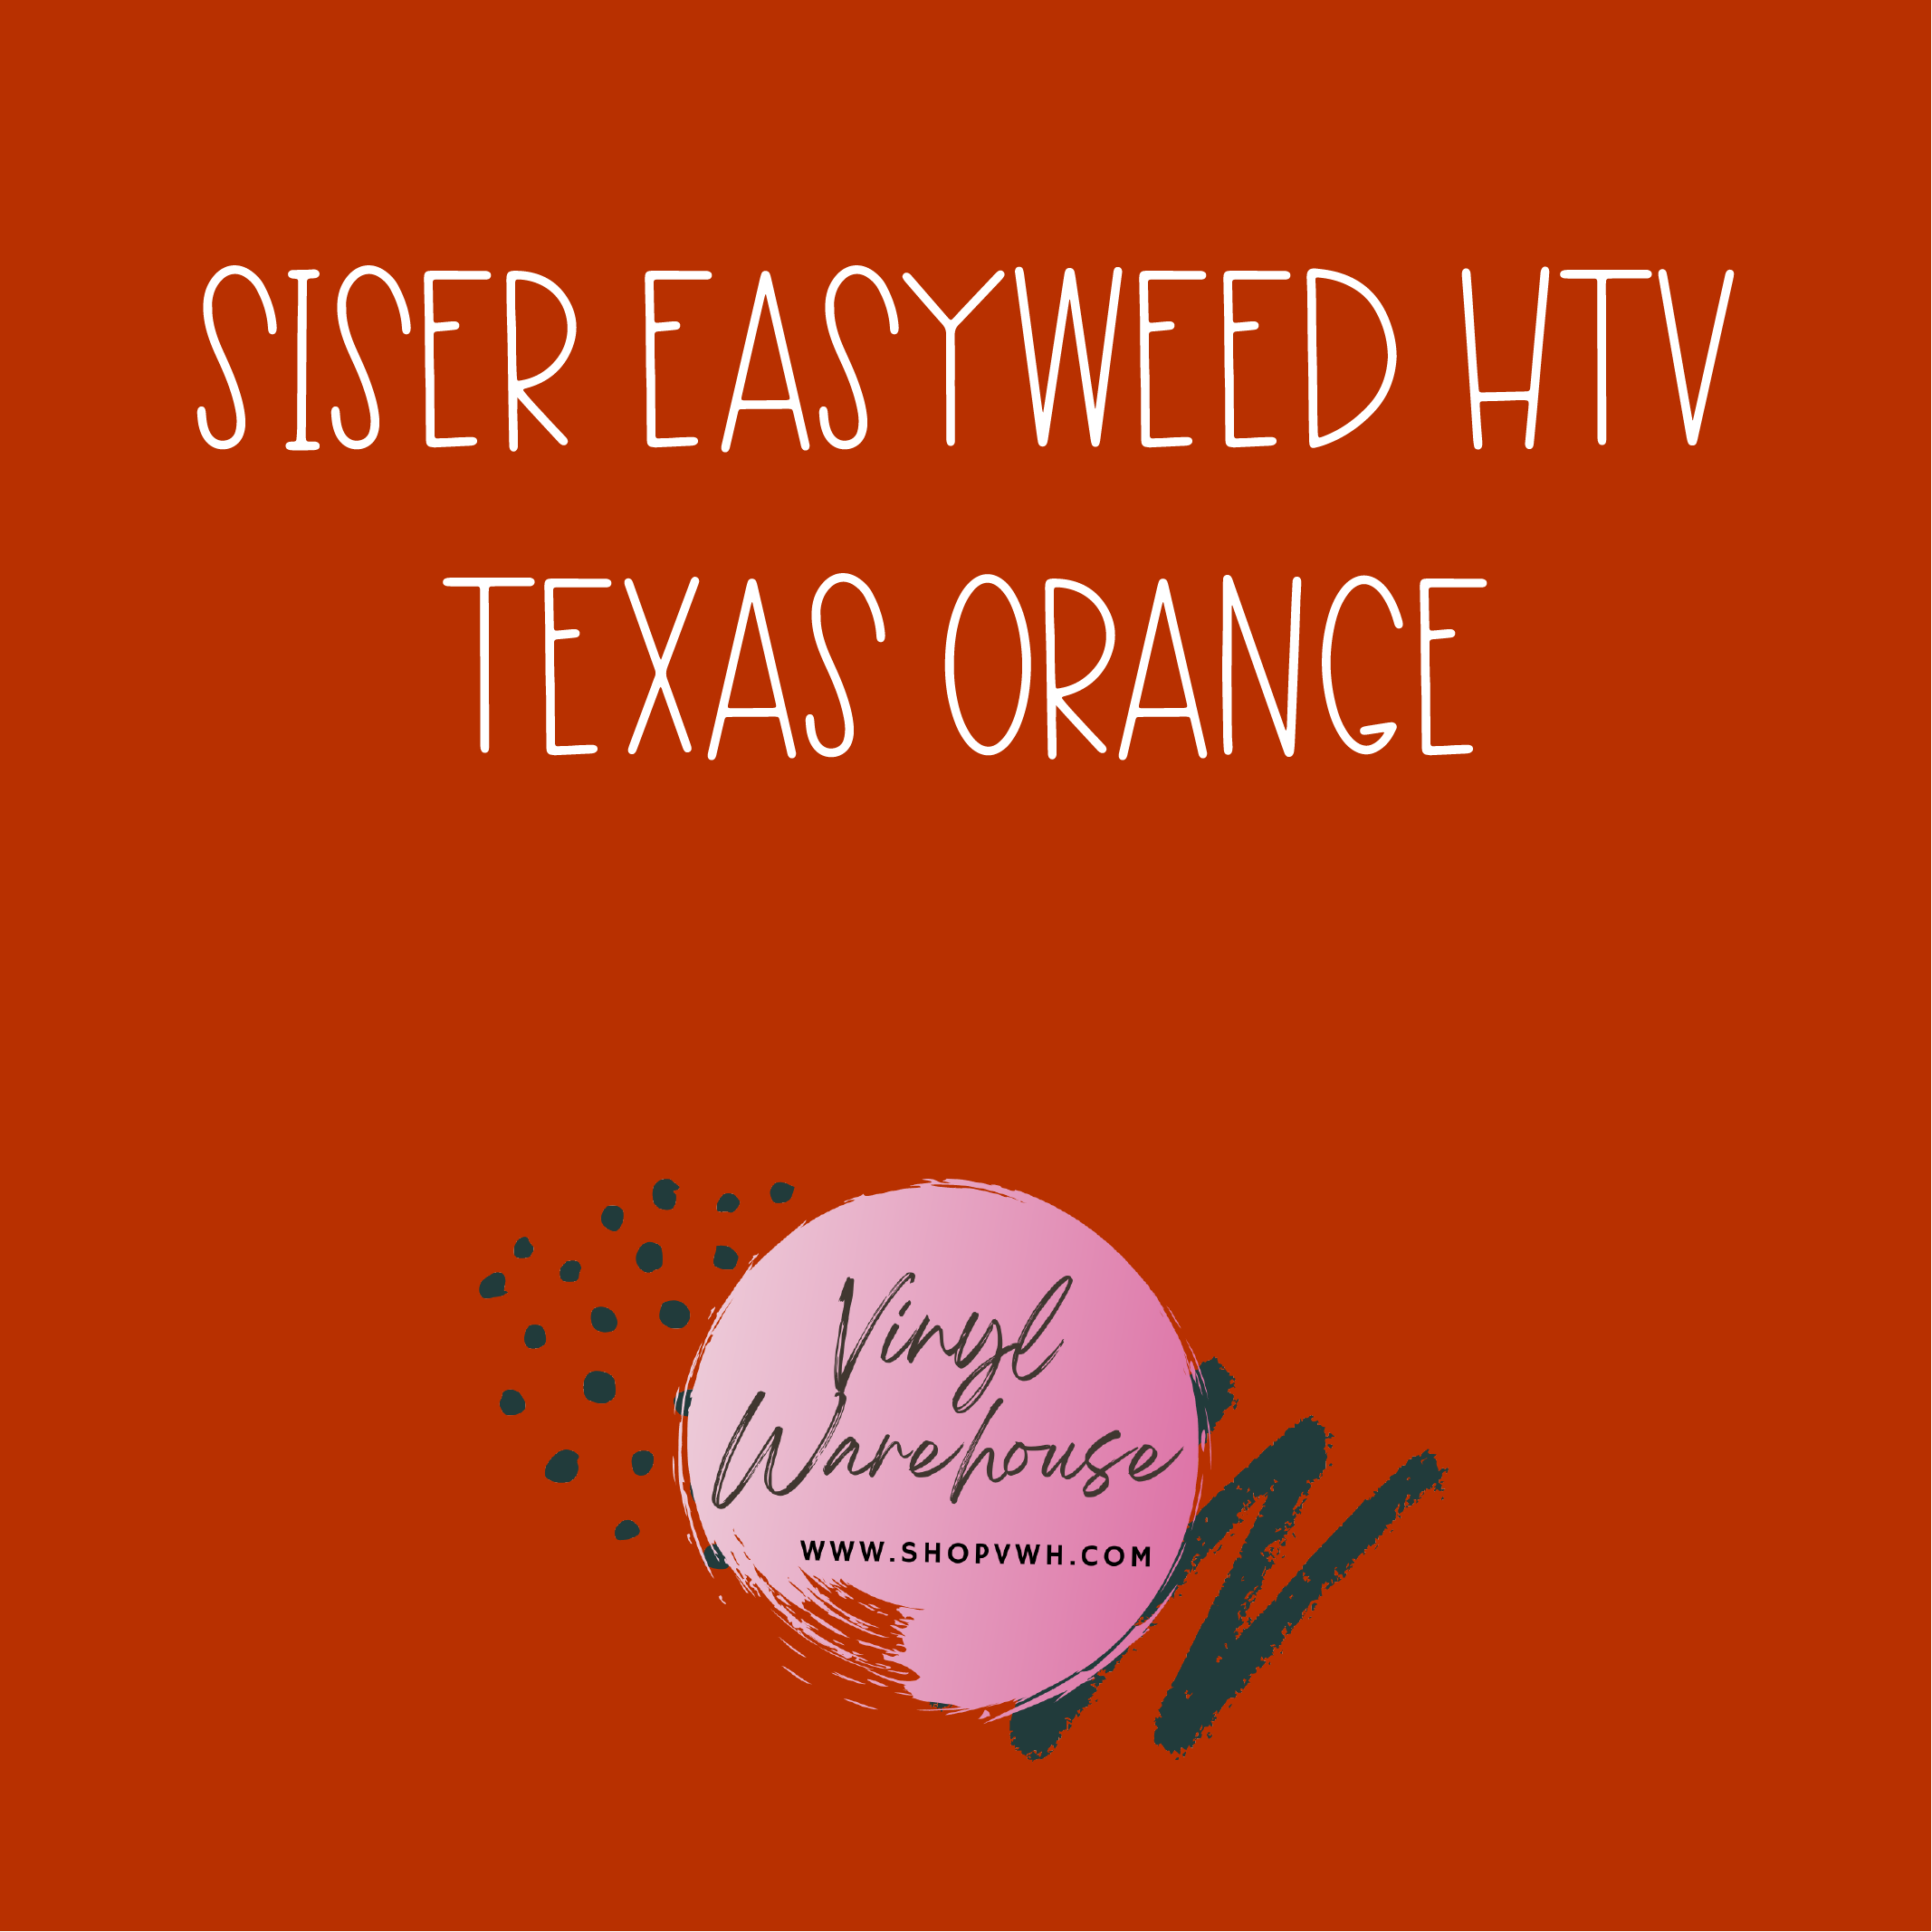 Siser EasyWeed HTV - Texas Orange – The Vinyl Warehouse